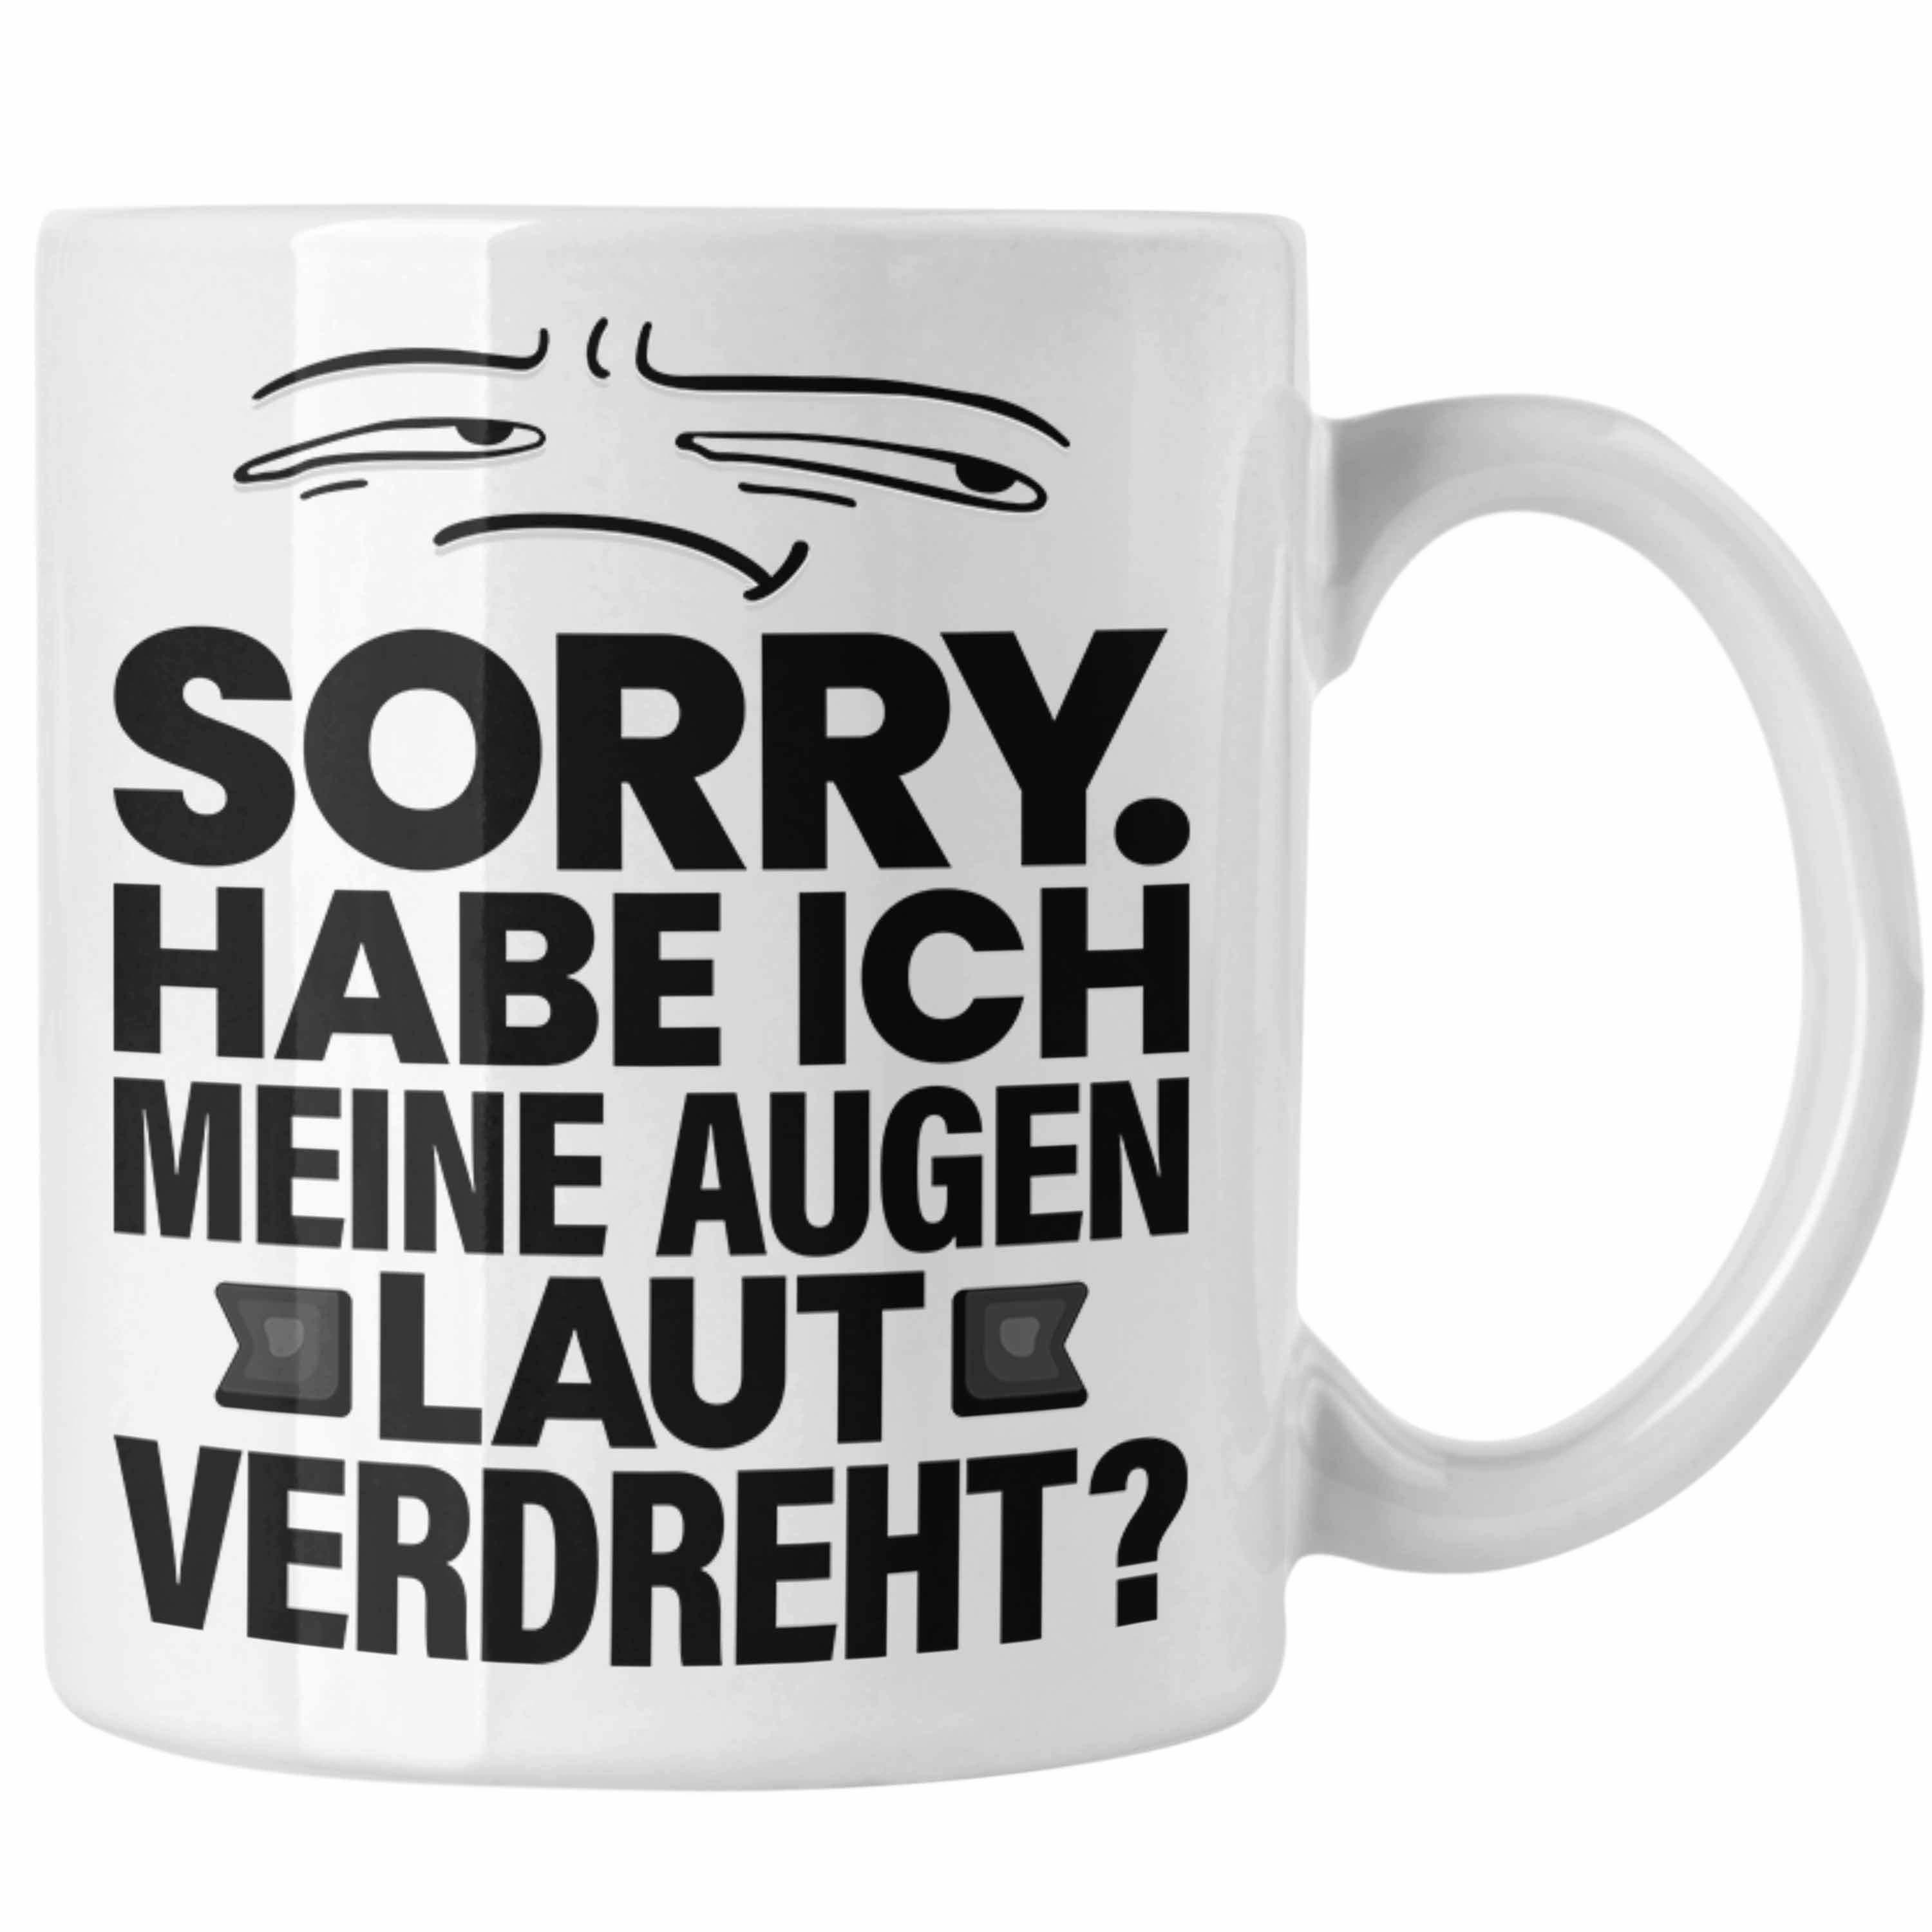 Laut Ich Humor Trendation Spruch Meine Sarkasmus Sorry Habe Weiss Lustiger Tasse Tasse Augen